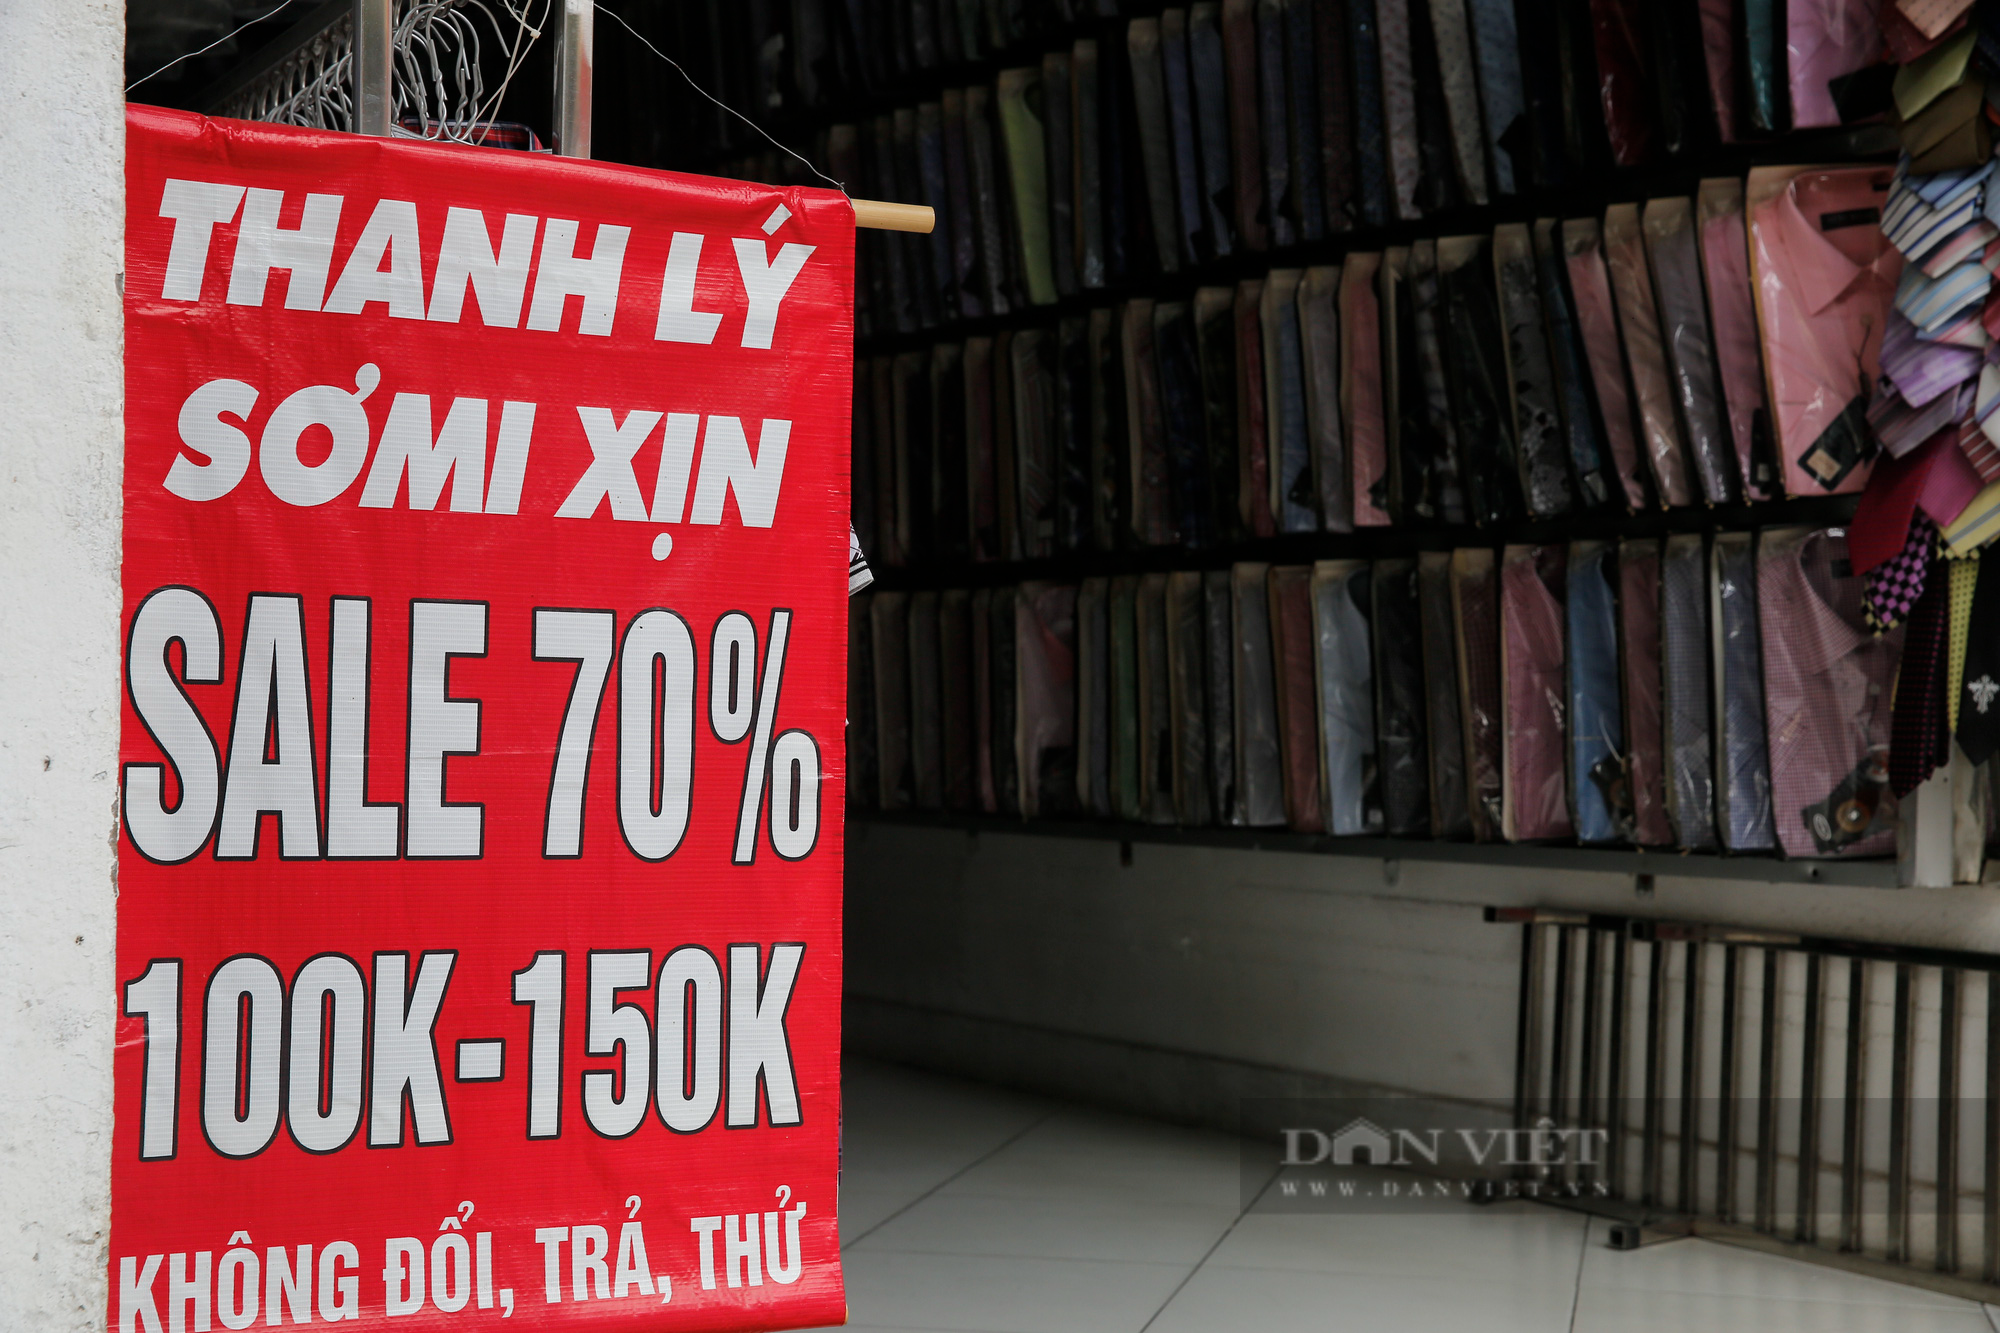 Giá thuê giảm 50%, chủ nhà vẫn bị “bùng” tiền tại phố buôn bán sầm uất nhất Hà Nội - Ảnh 5.